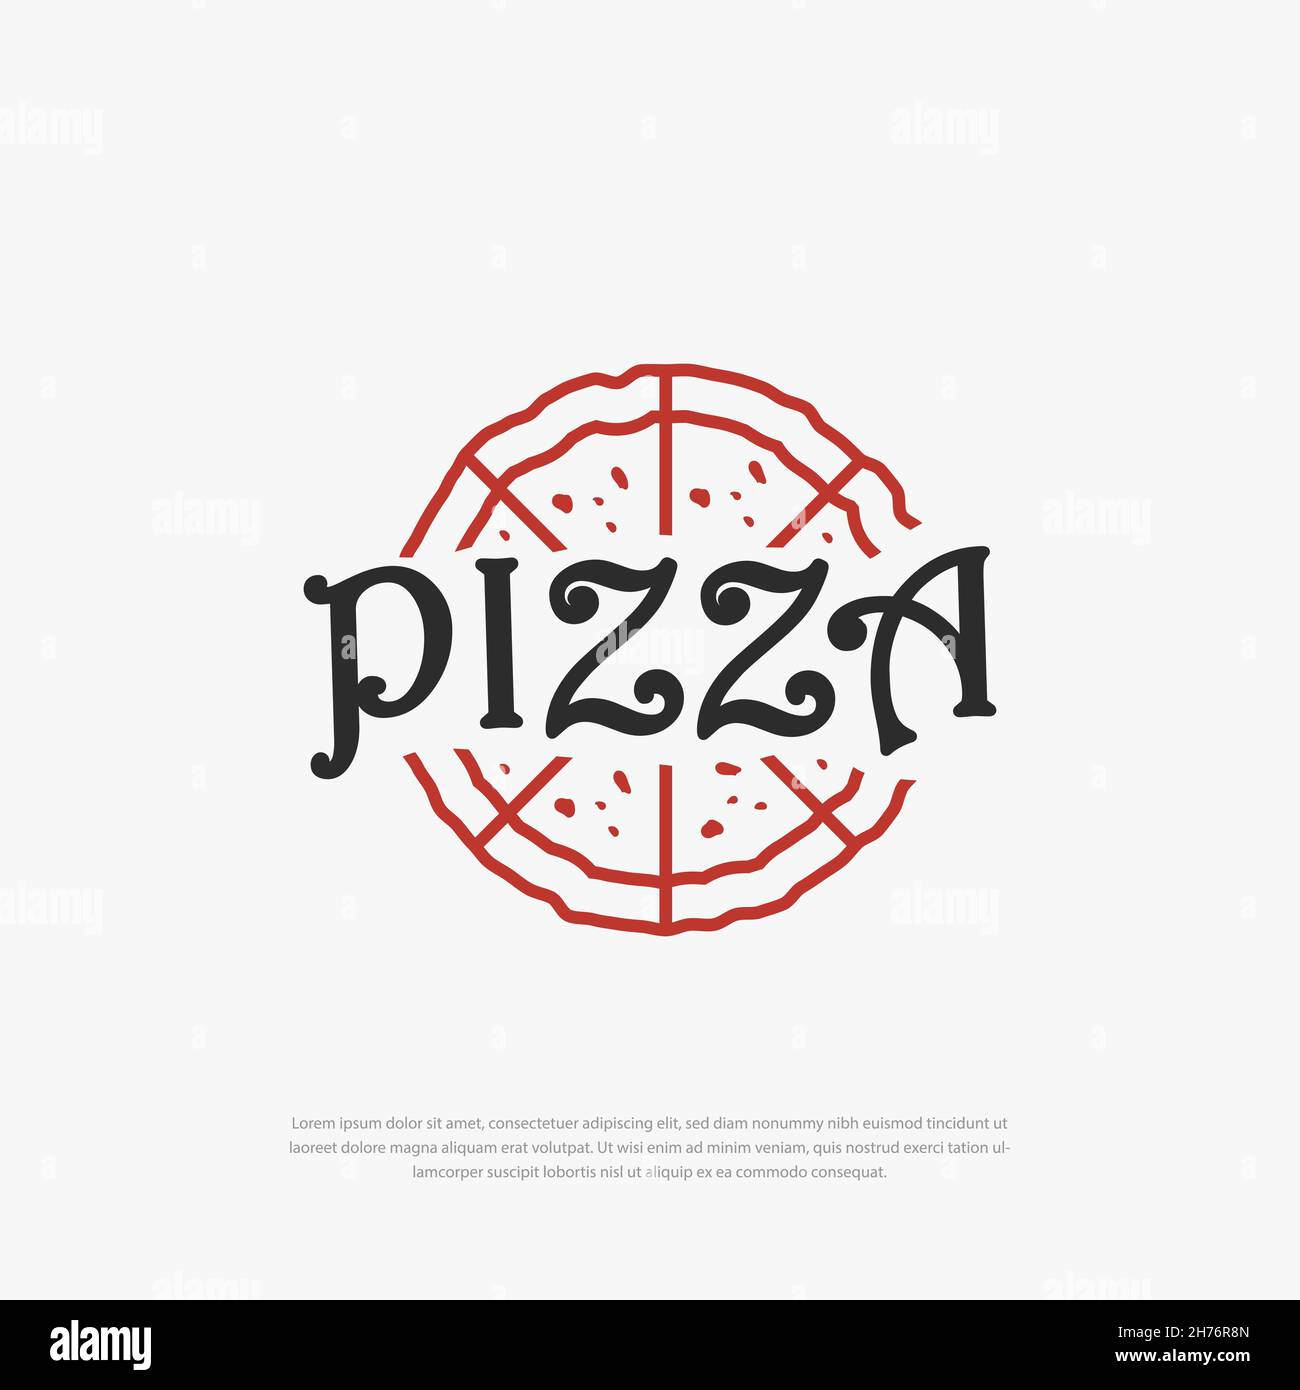 Illustrazione del logo del Ristorante Pizza Rustic Illustrazione Vettoriale